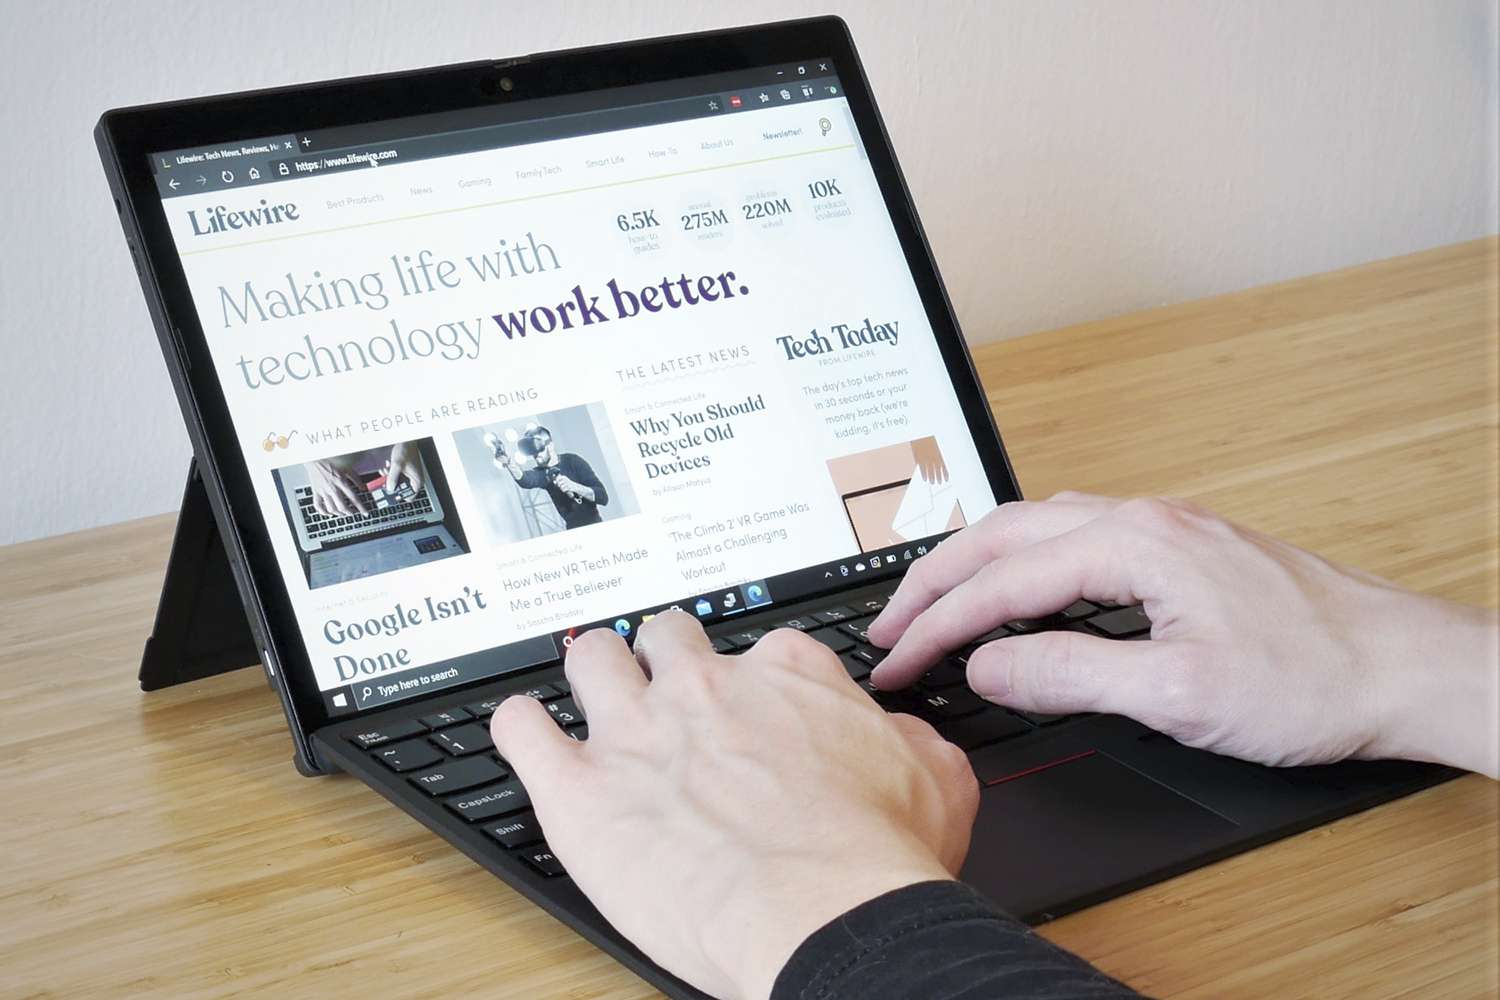 ThinkPad X12 Detachable khai phá khả năng sáng tạo